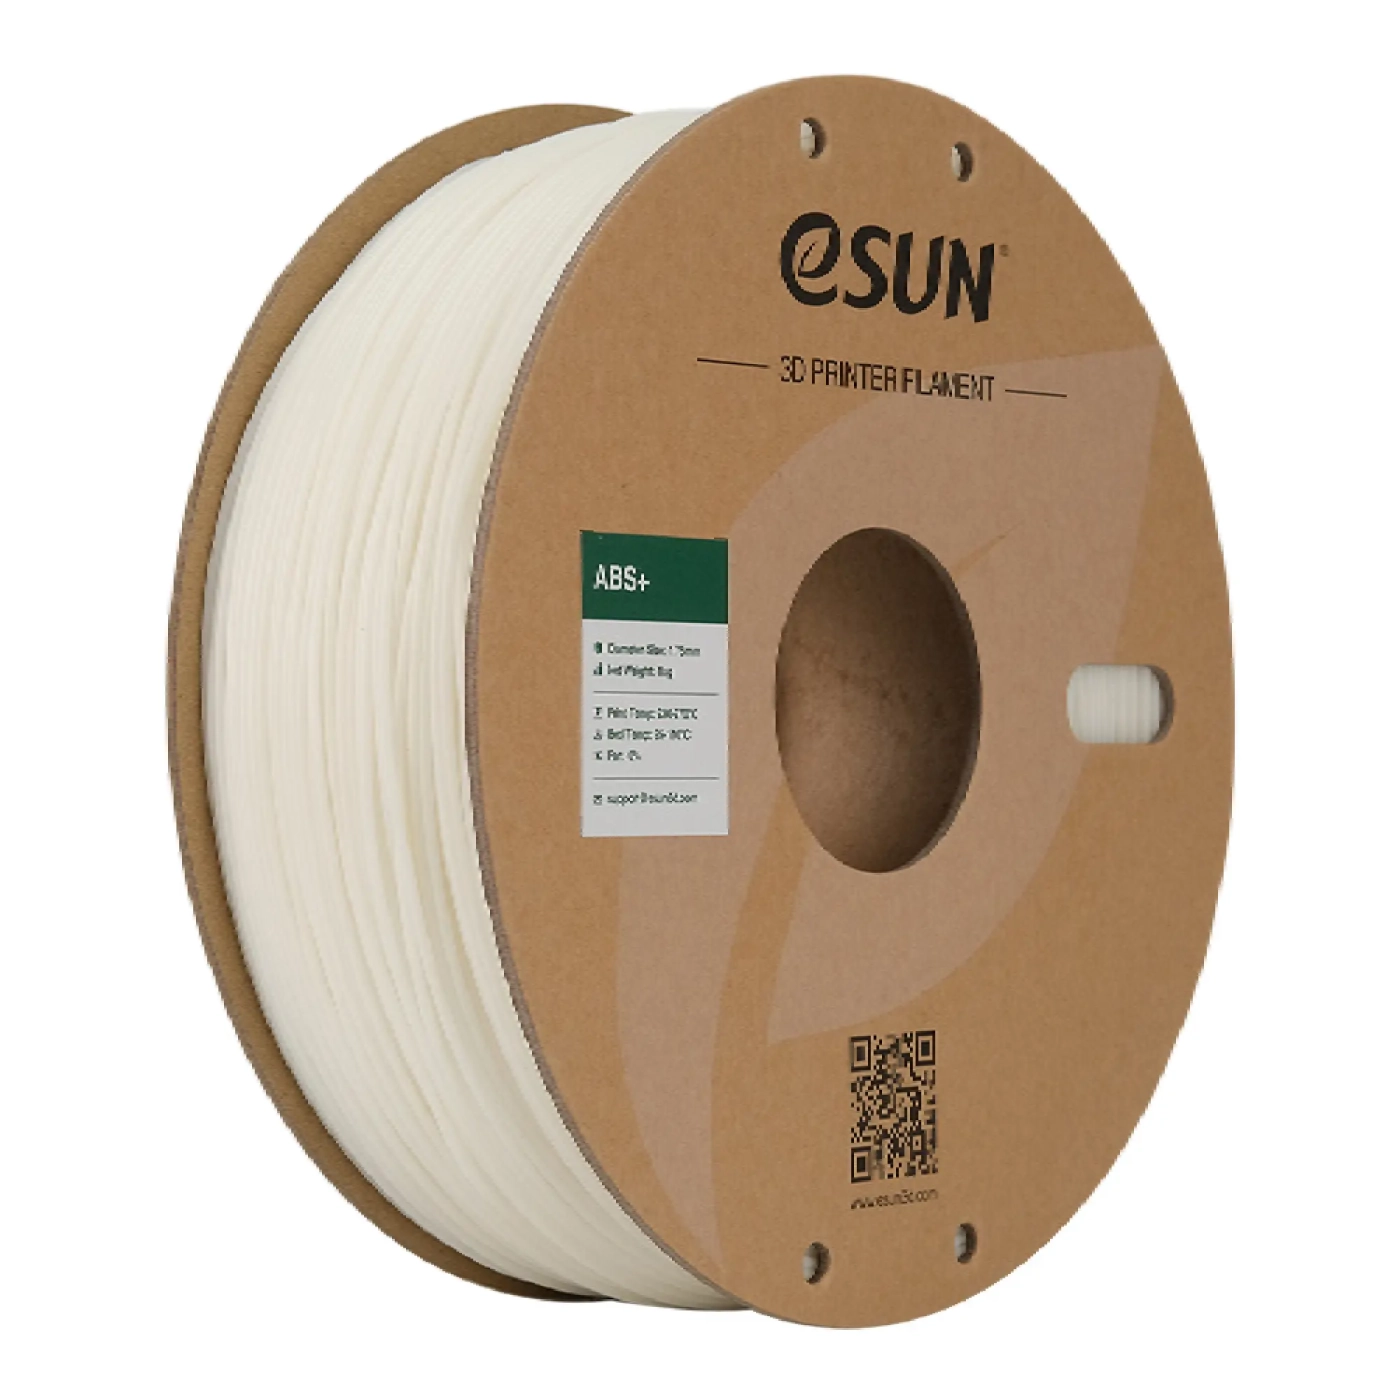 Купить ABS Plus Filament (пластик) для 3D принтера Esun 1кг, 1.75мм, натуральный (ABS+175N1) - фото 1